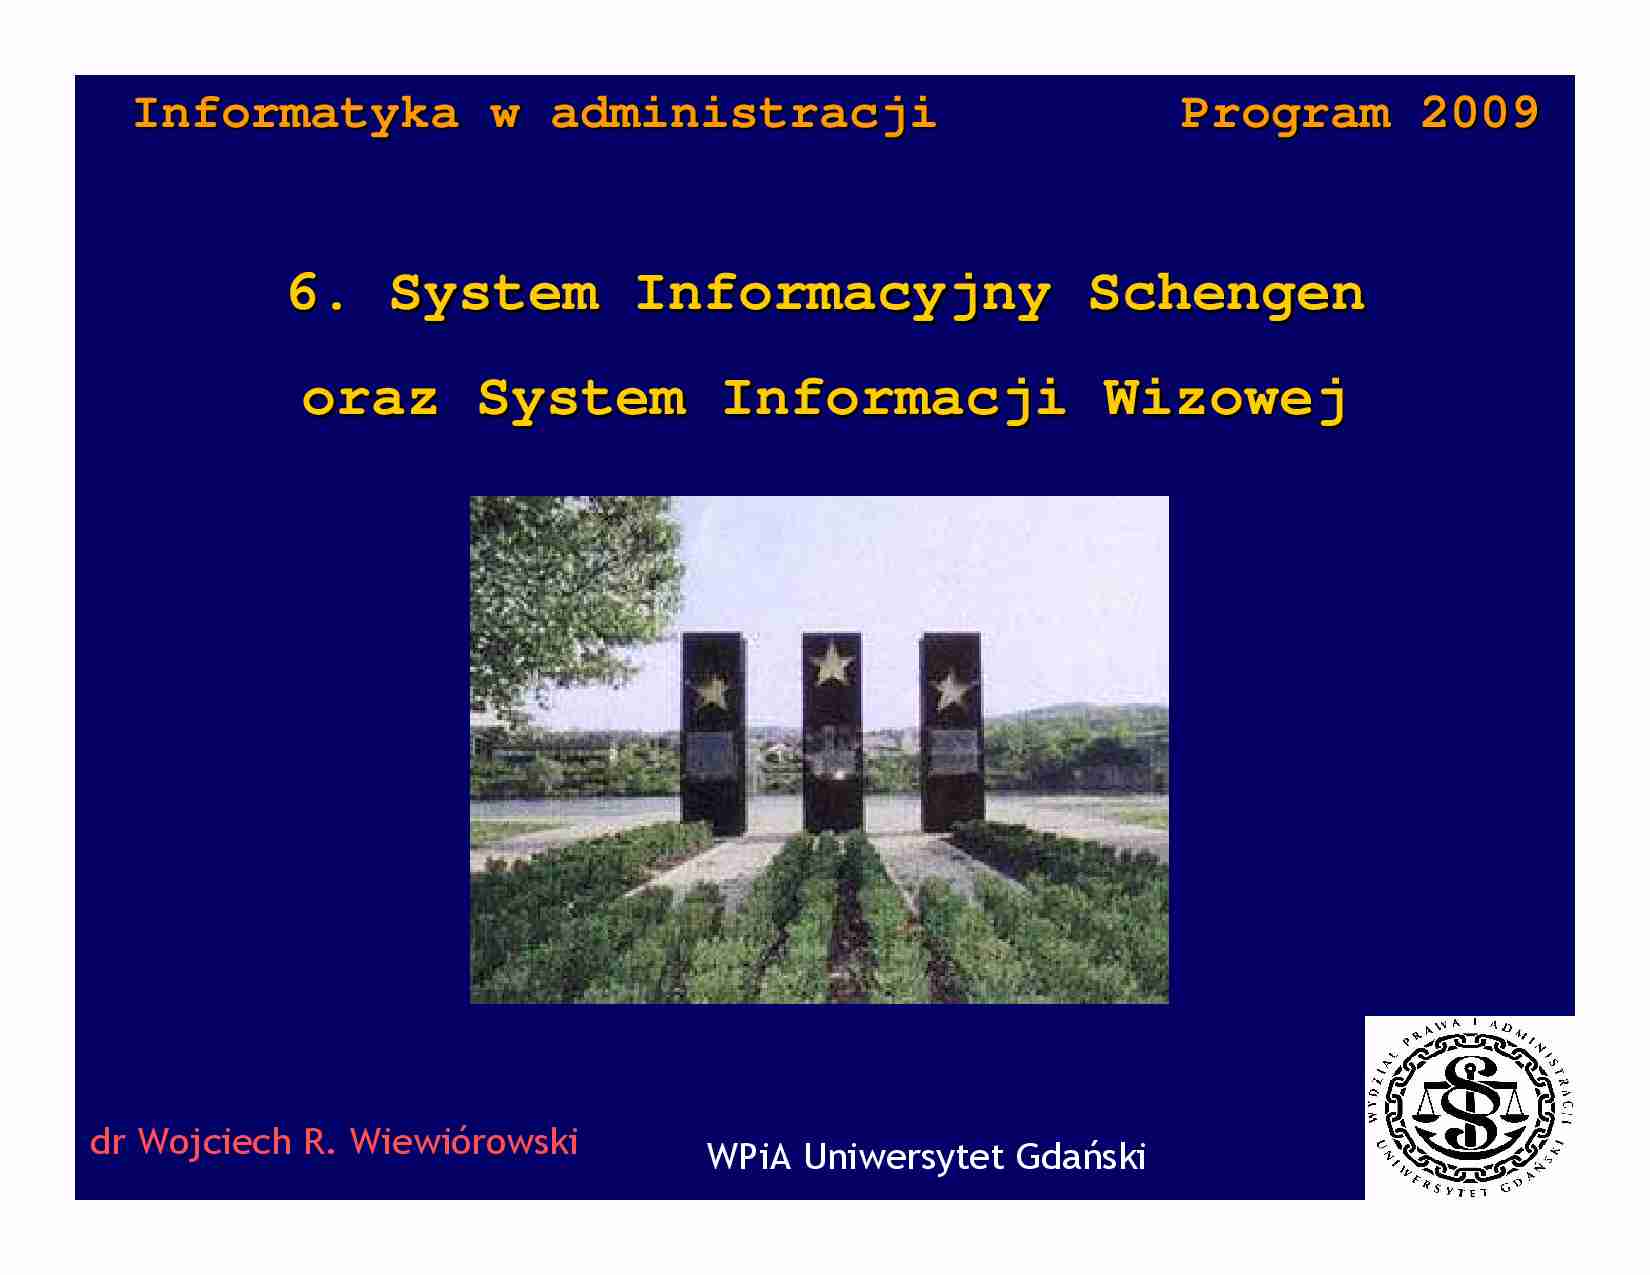 System informacyjny schengen - omówienie - strona 1